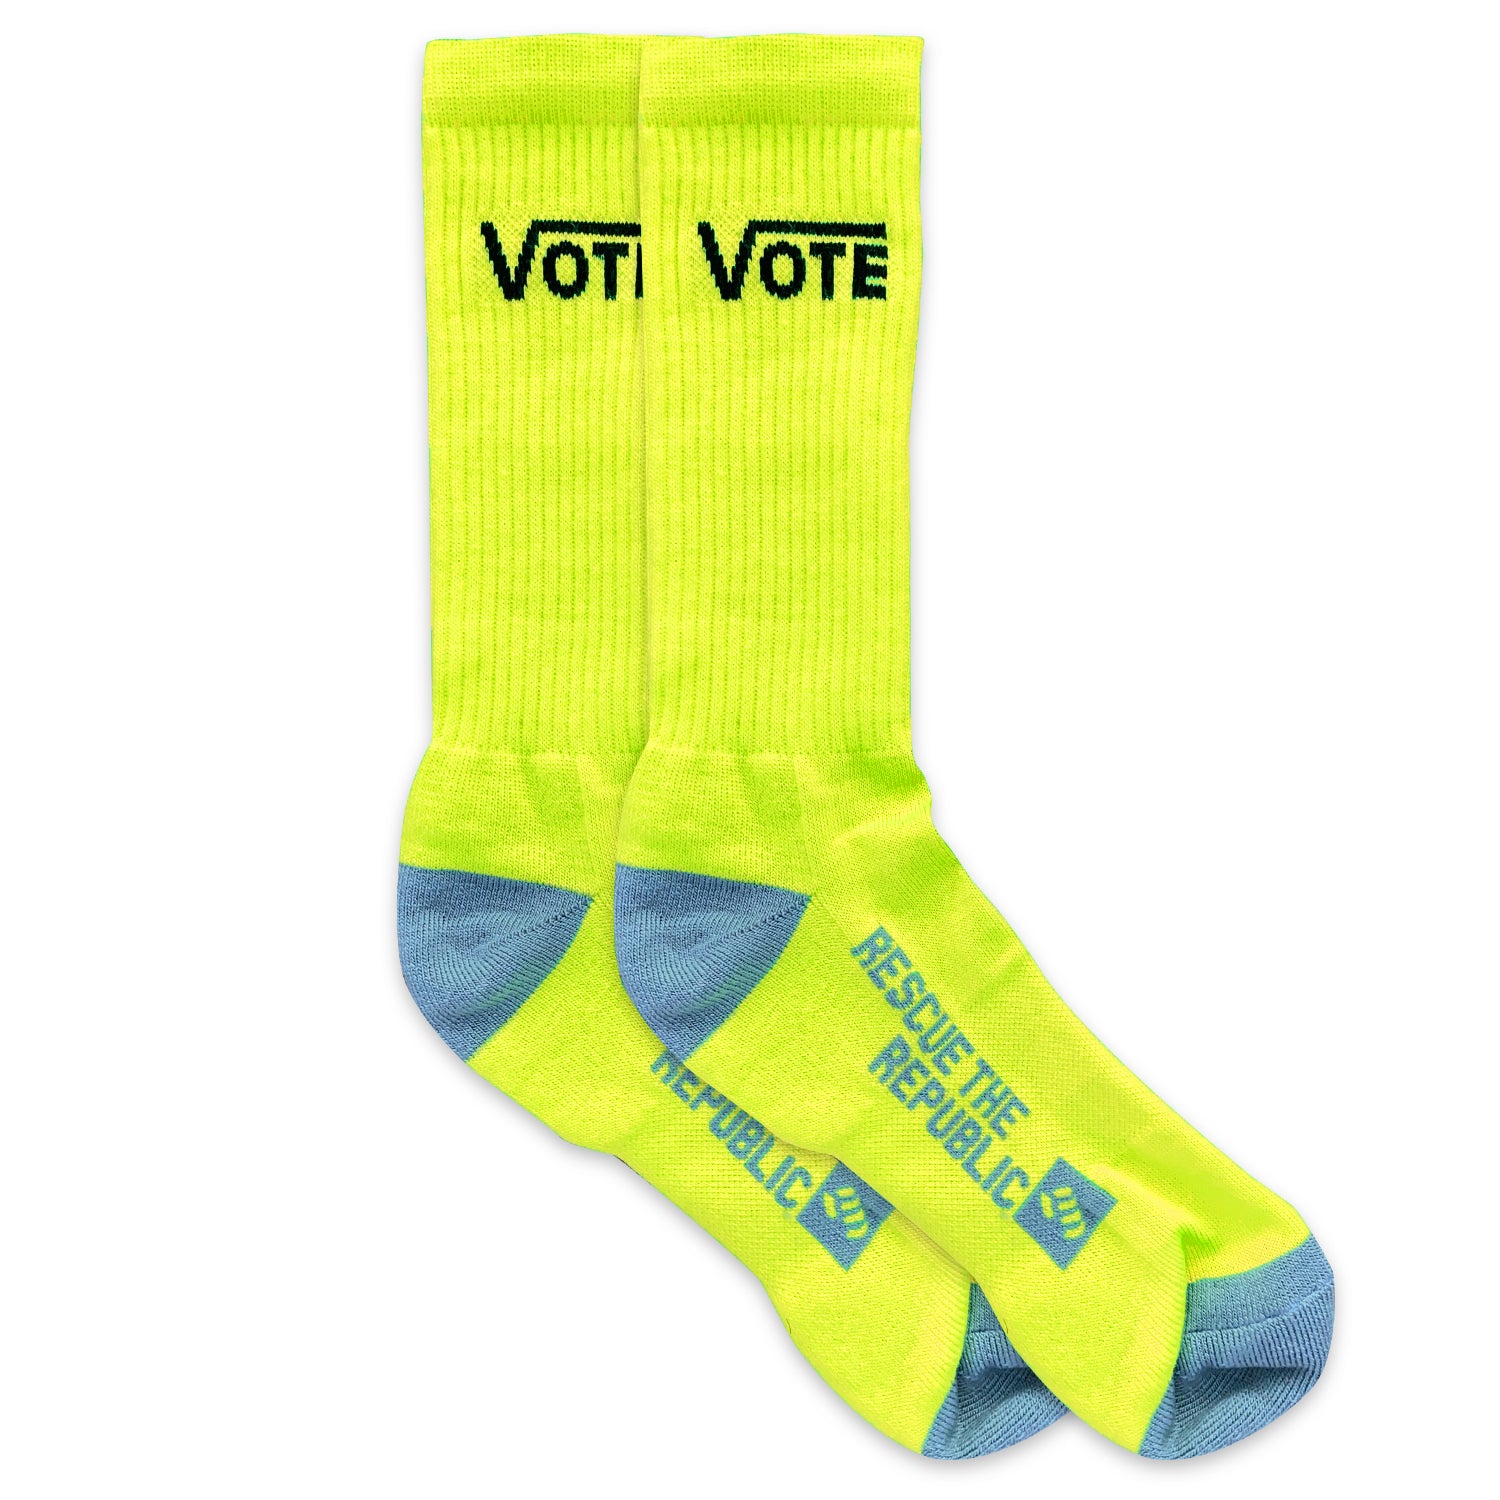 Vote Neon Yellow Crew Socks